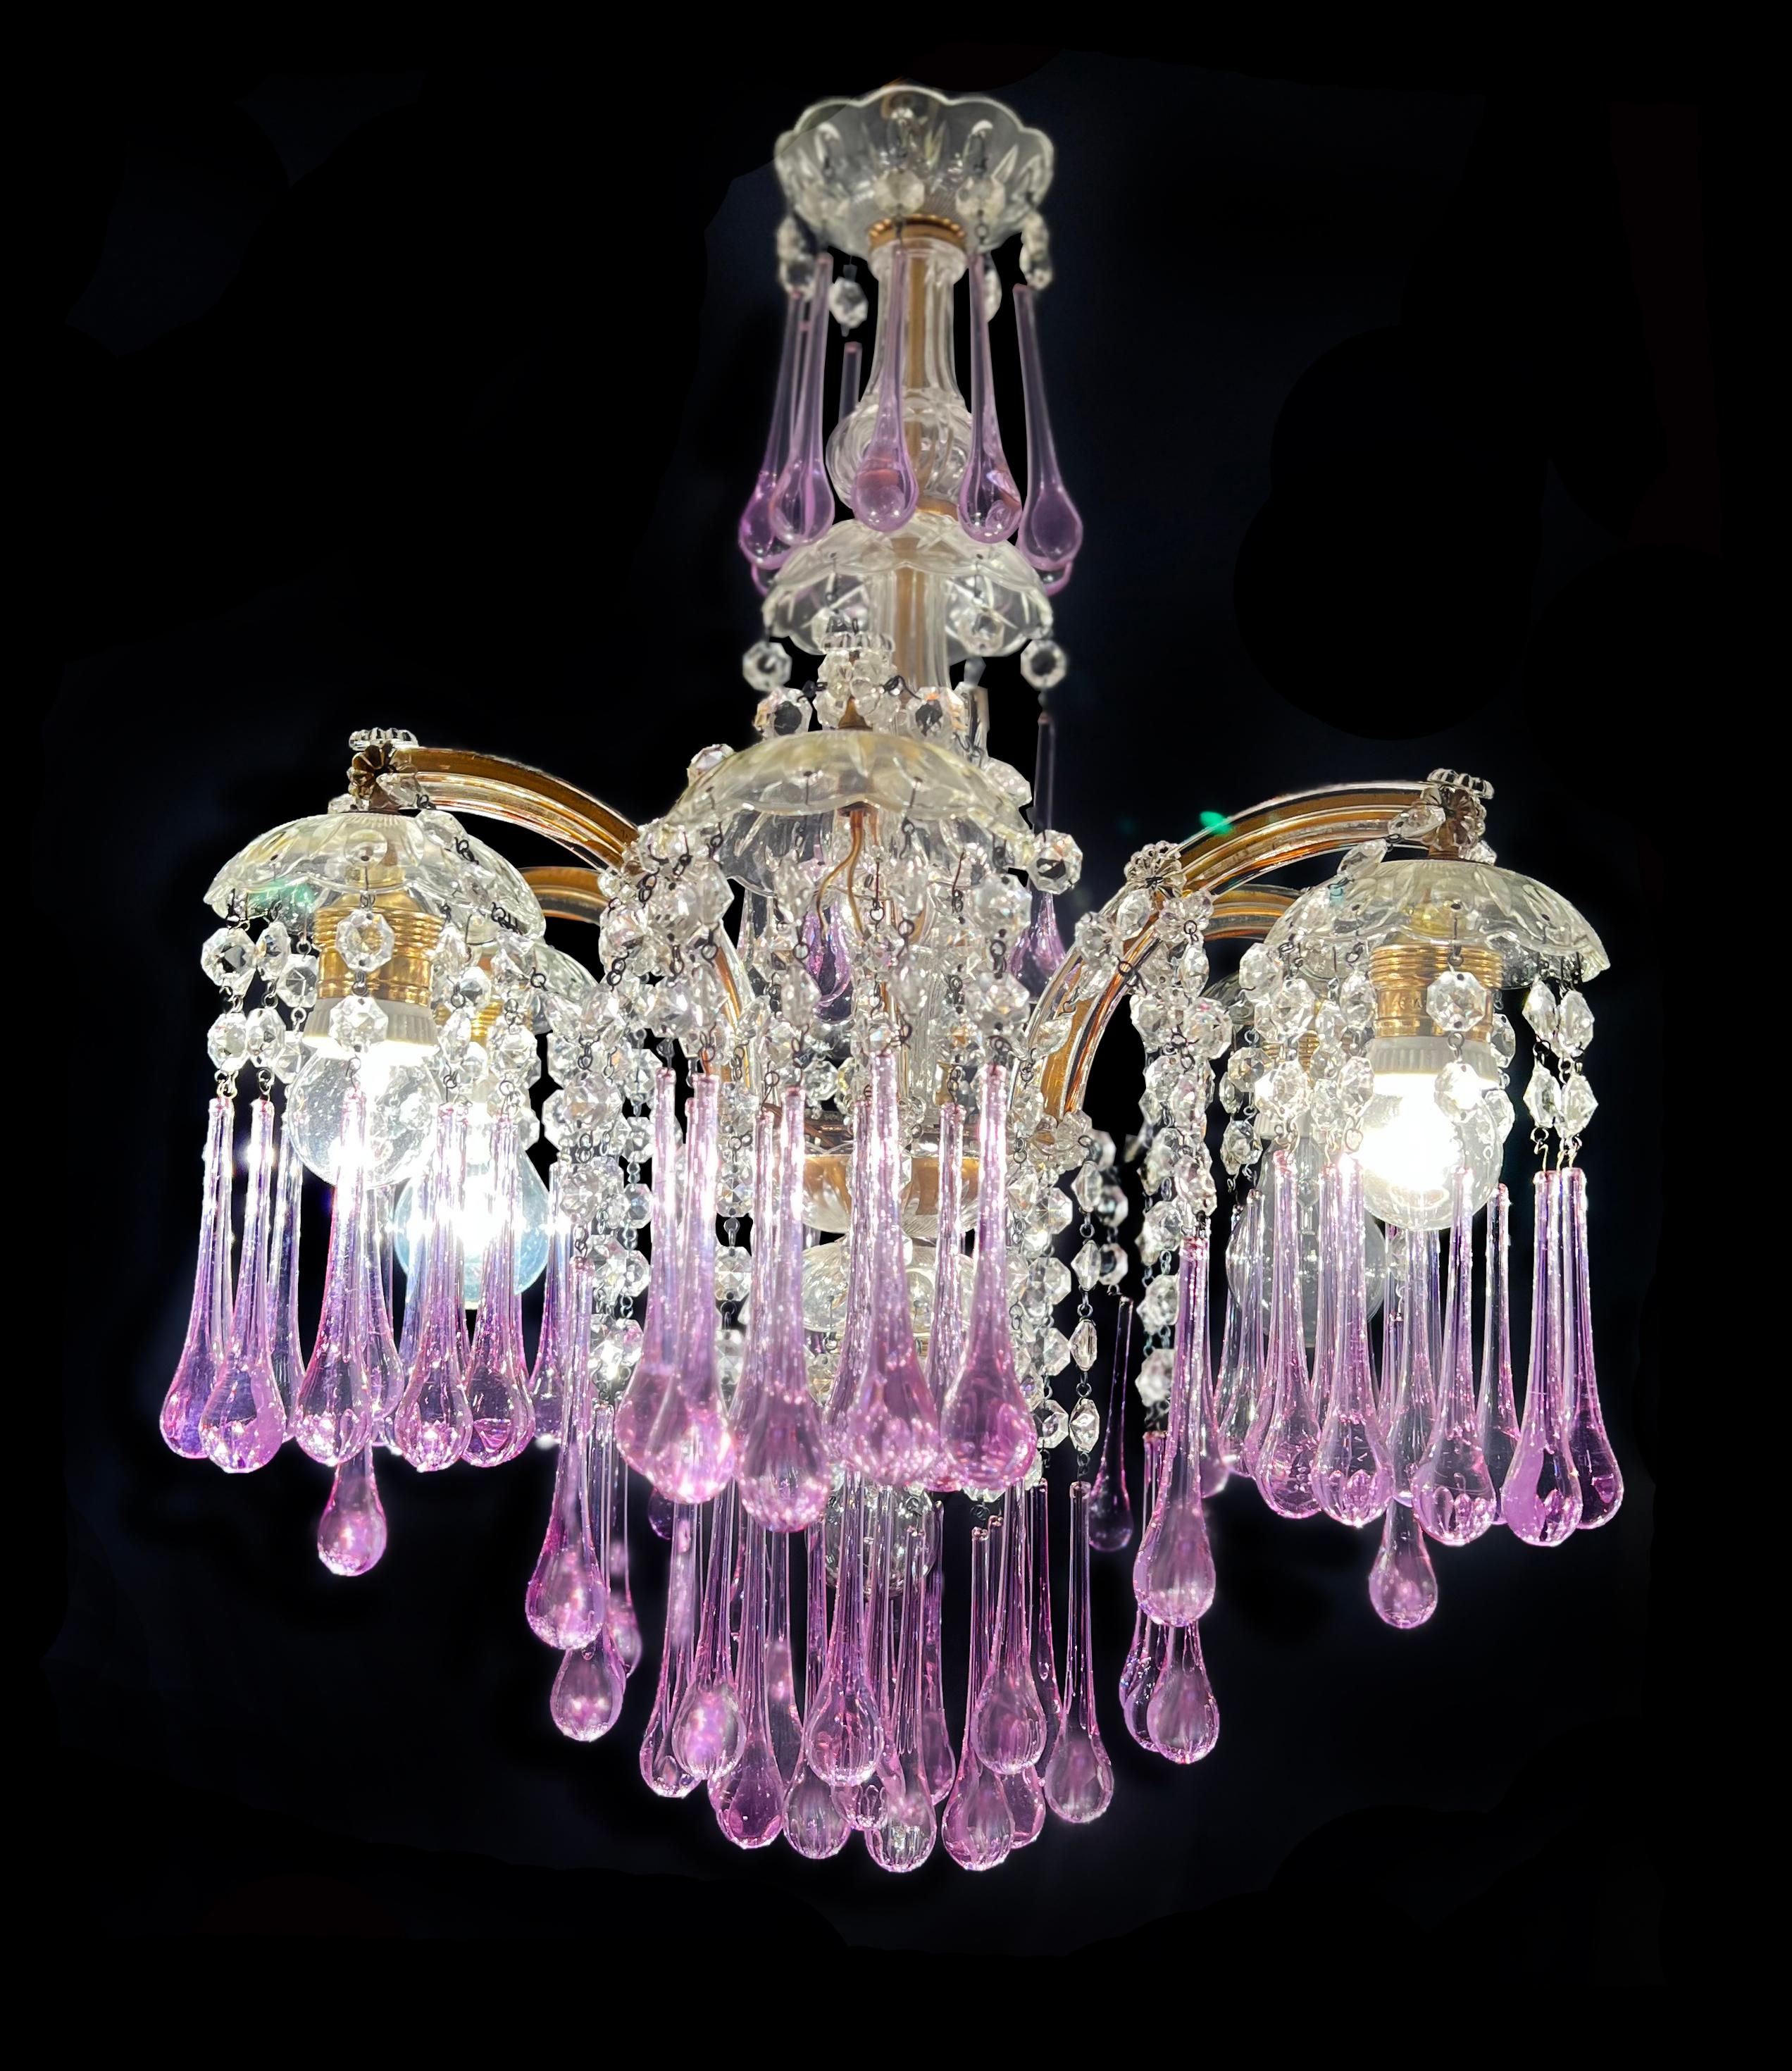 Fascinant lustre de Murano inspiré par la divine Liz Taylor.
Hauteur sans chaîne 60 cm, diamètre 42 cm. Sept lampes E27